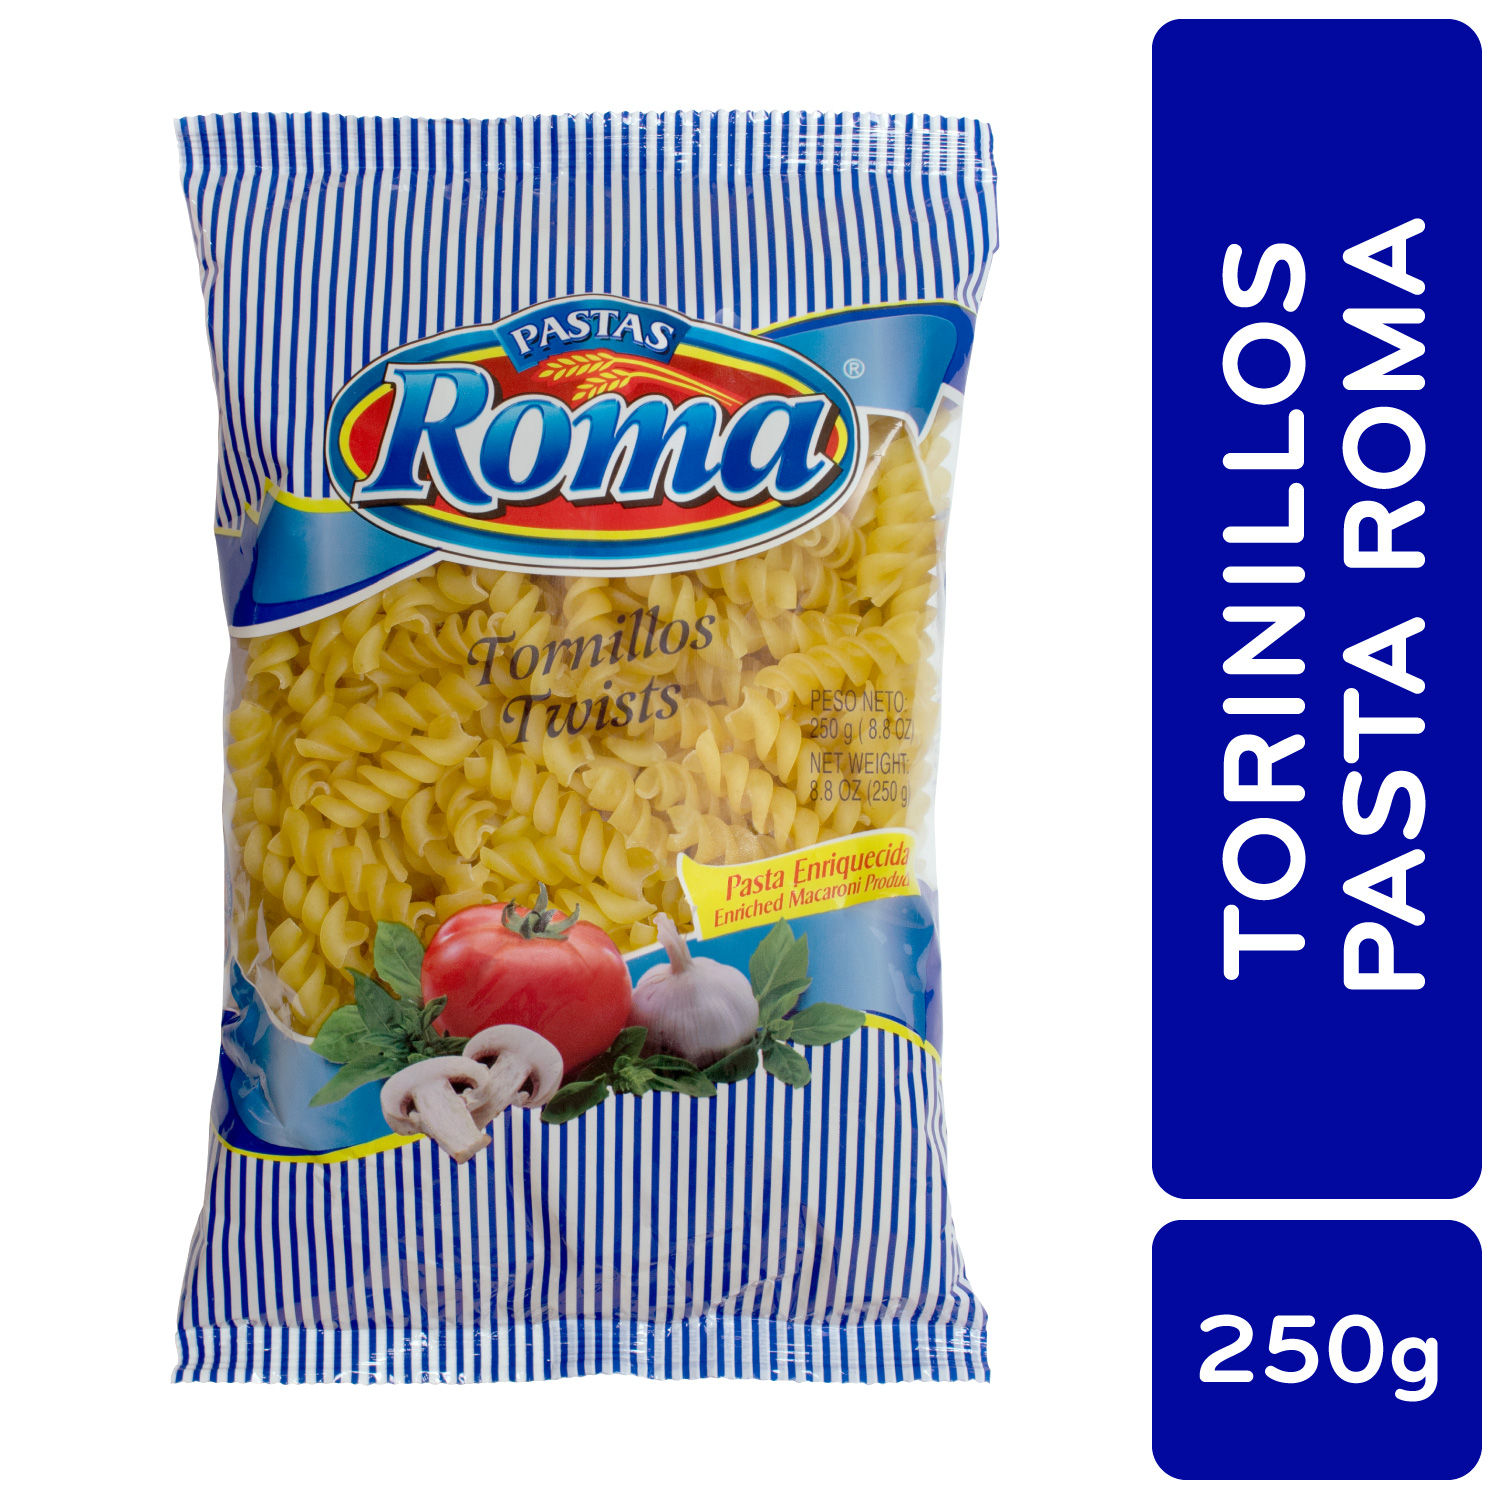 Pasta Alimenticia Tornillo Roma Paquete 250 G